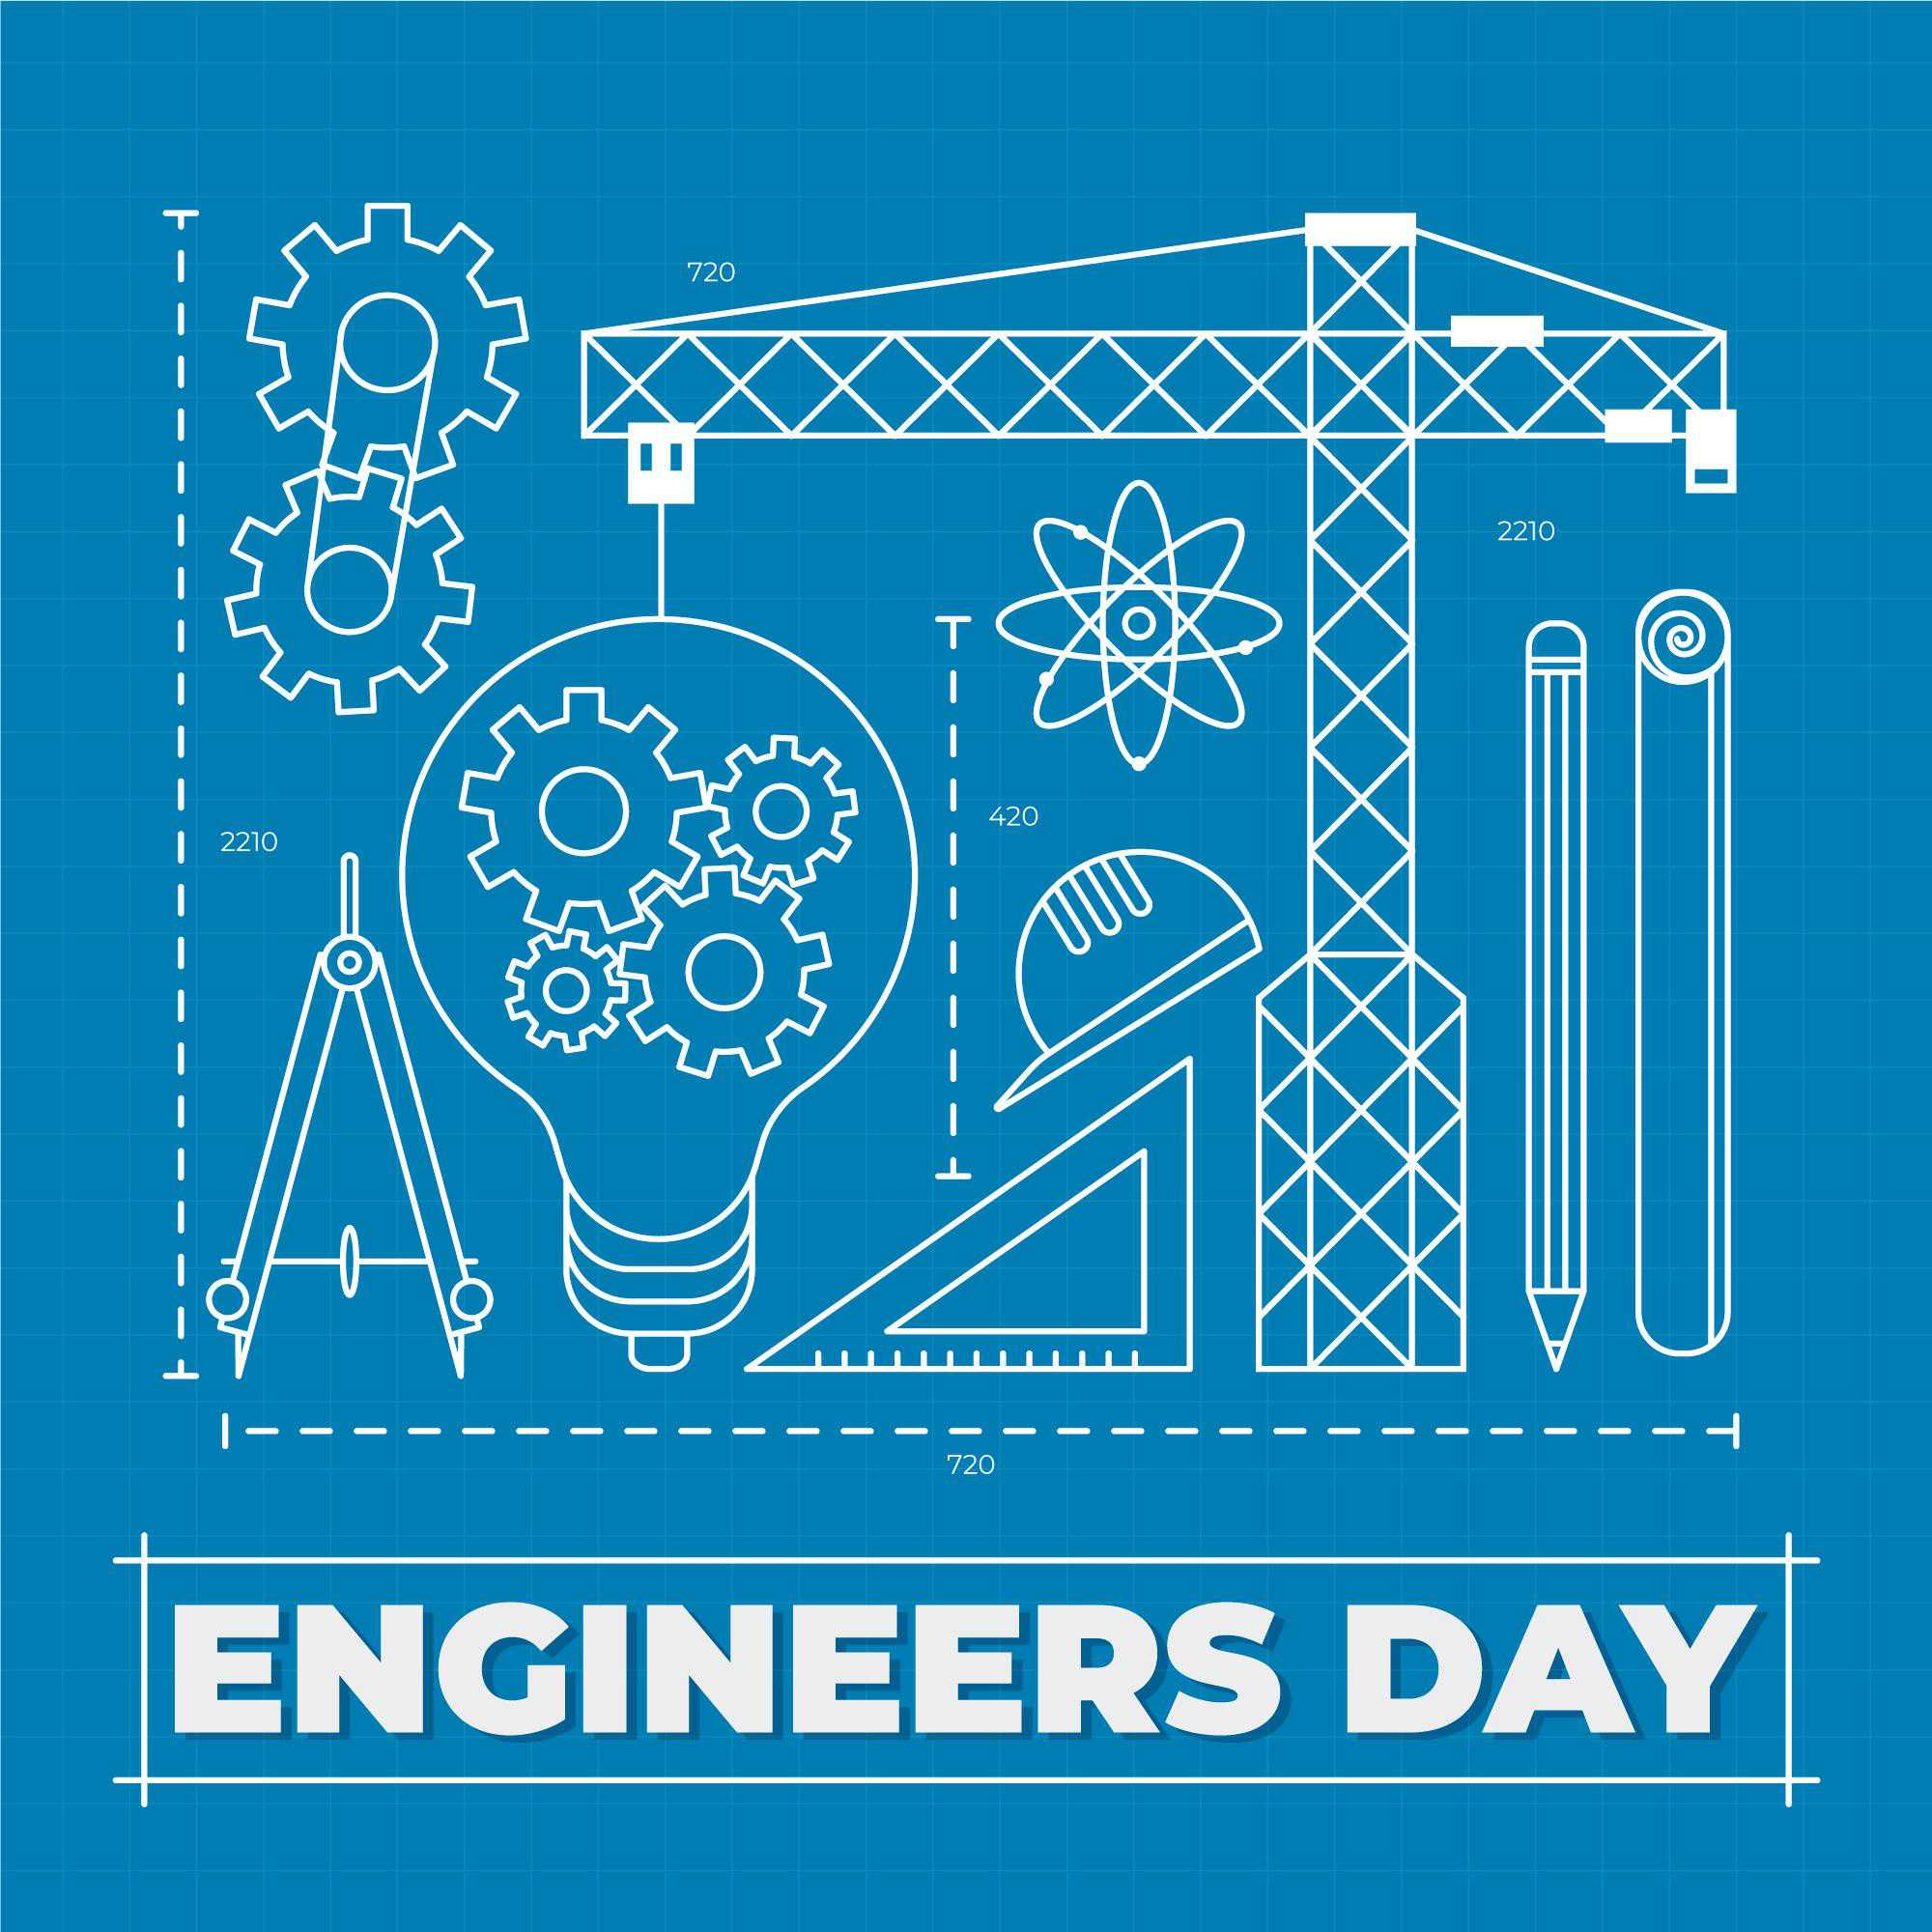 Happy Engineer's Day pics